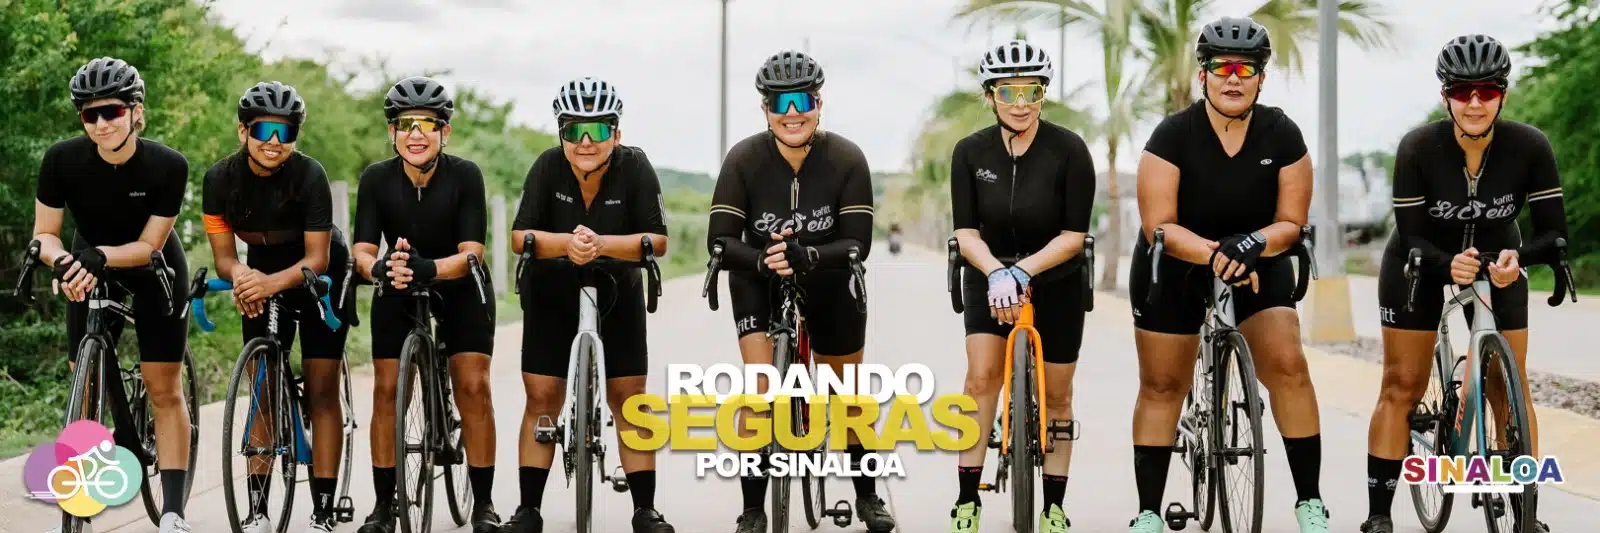 “Rodando seguras por Sinaloa” busca ser incluido en el libro de Récord Guinness.